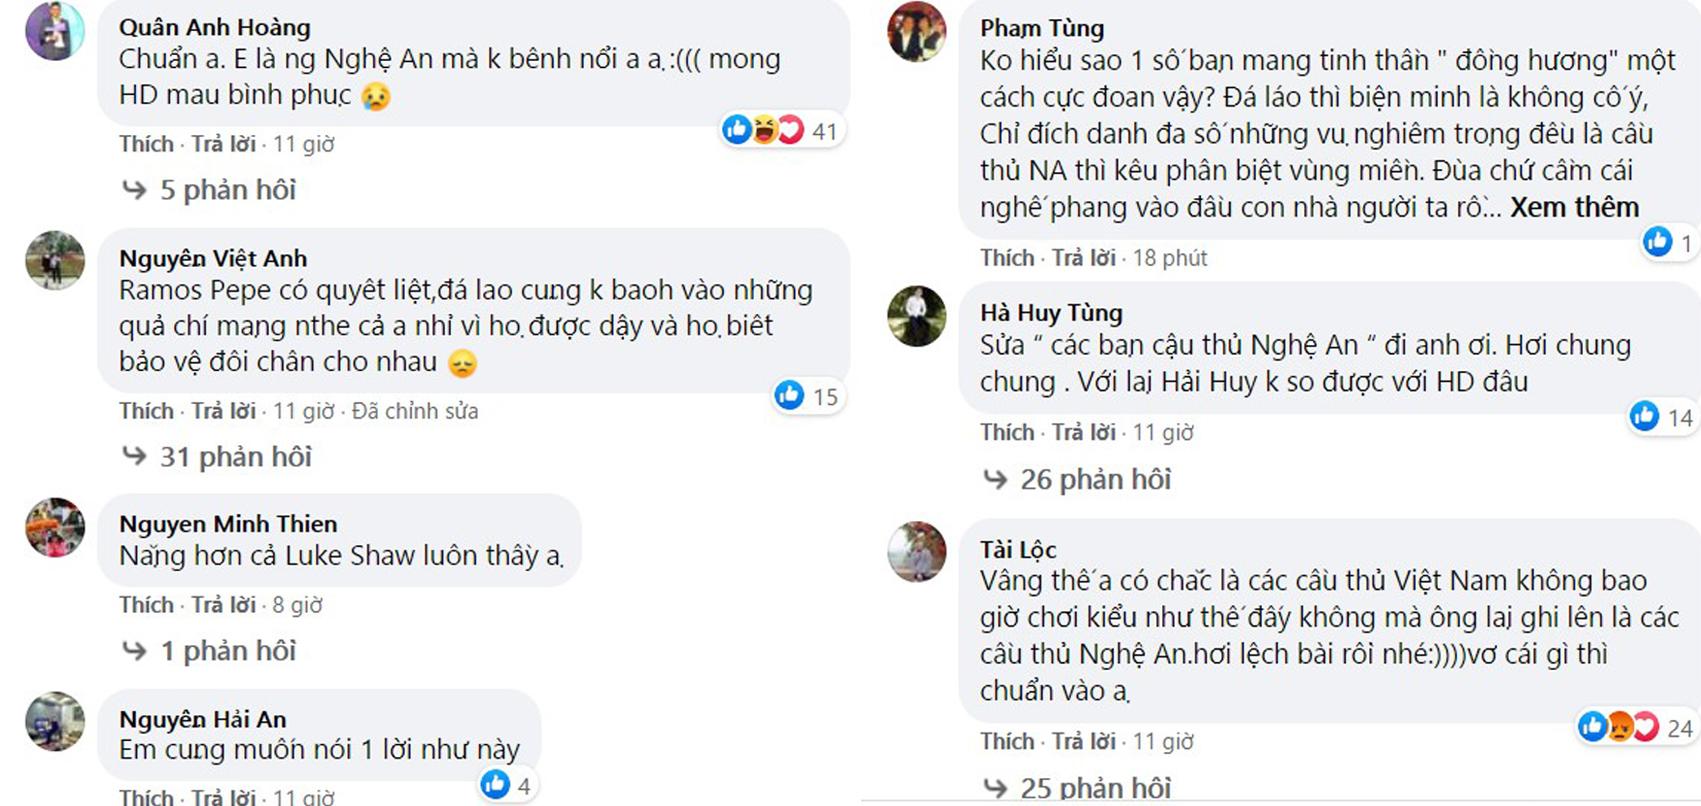 Nhạc sĩ Hồ Hoài Anh, MC Thành Trung lên tiếng sau chấn thương của Hùng Dũng nhưng lại bị Hoàng Bách và netizen vào 'phản đối' - Ảnh 5